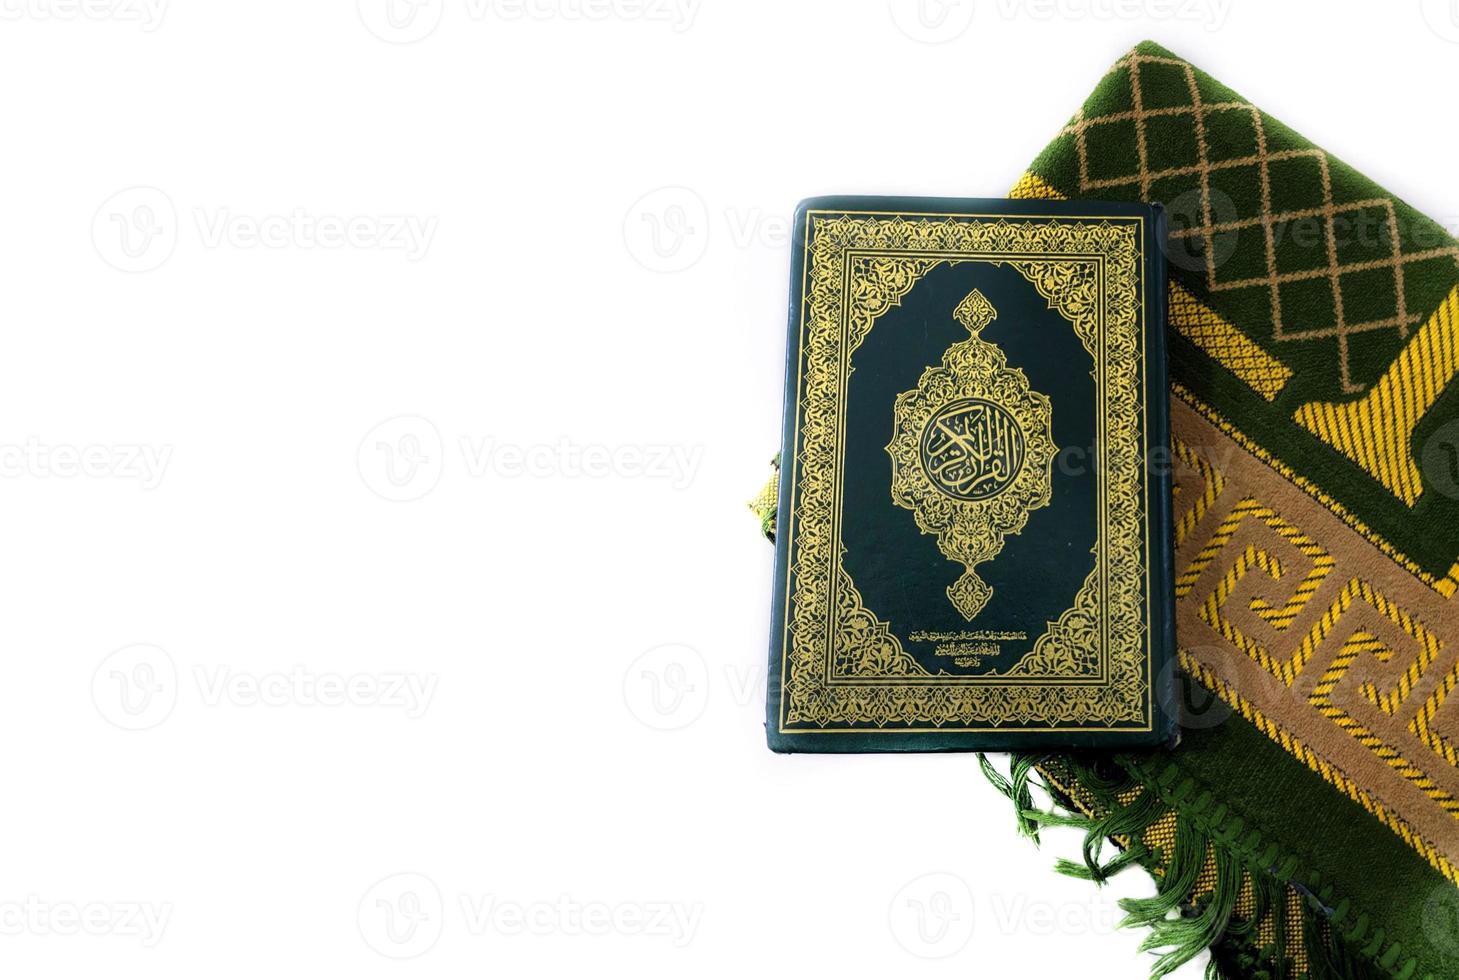 fotos del corán y alfombras de oración listas para el ramadán. árabe en la portada se traduce como el Corán